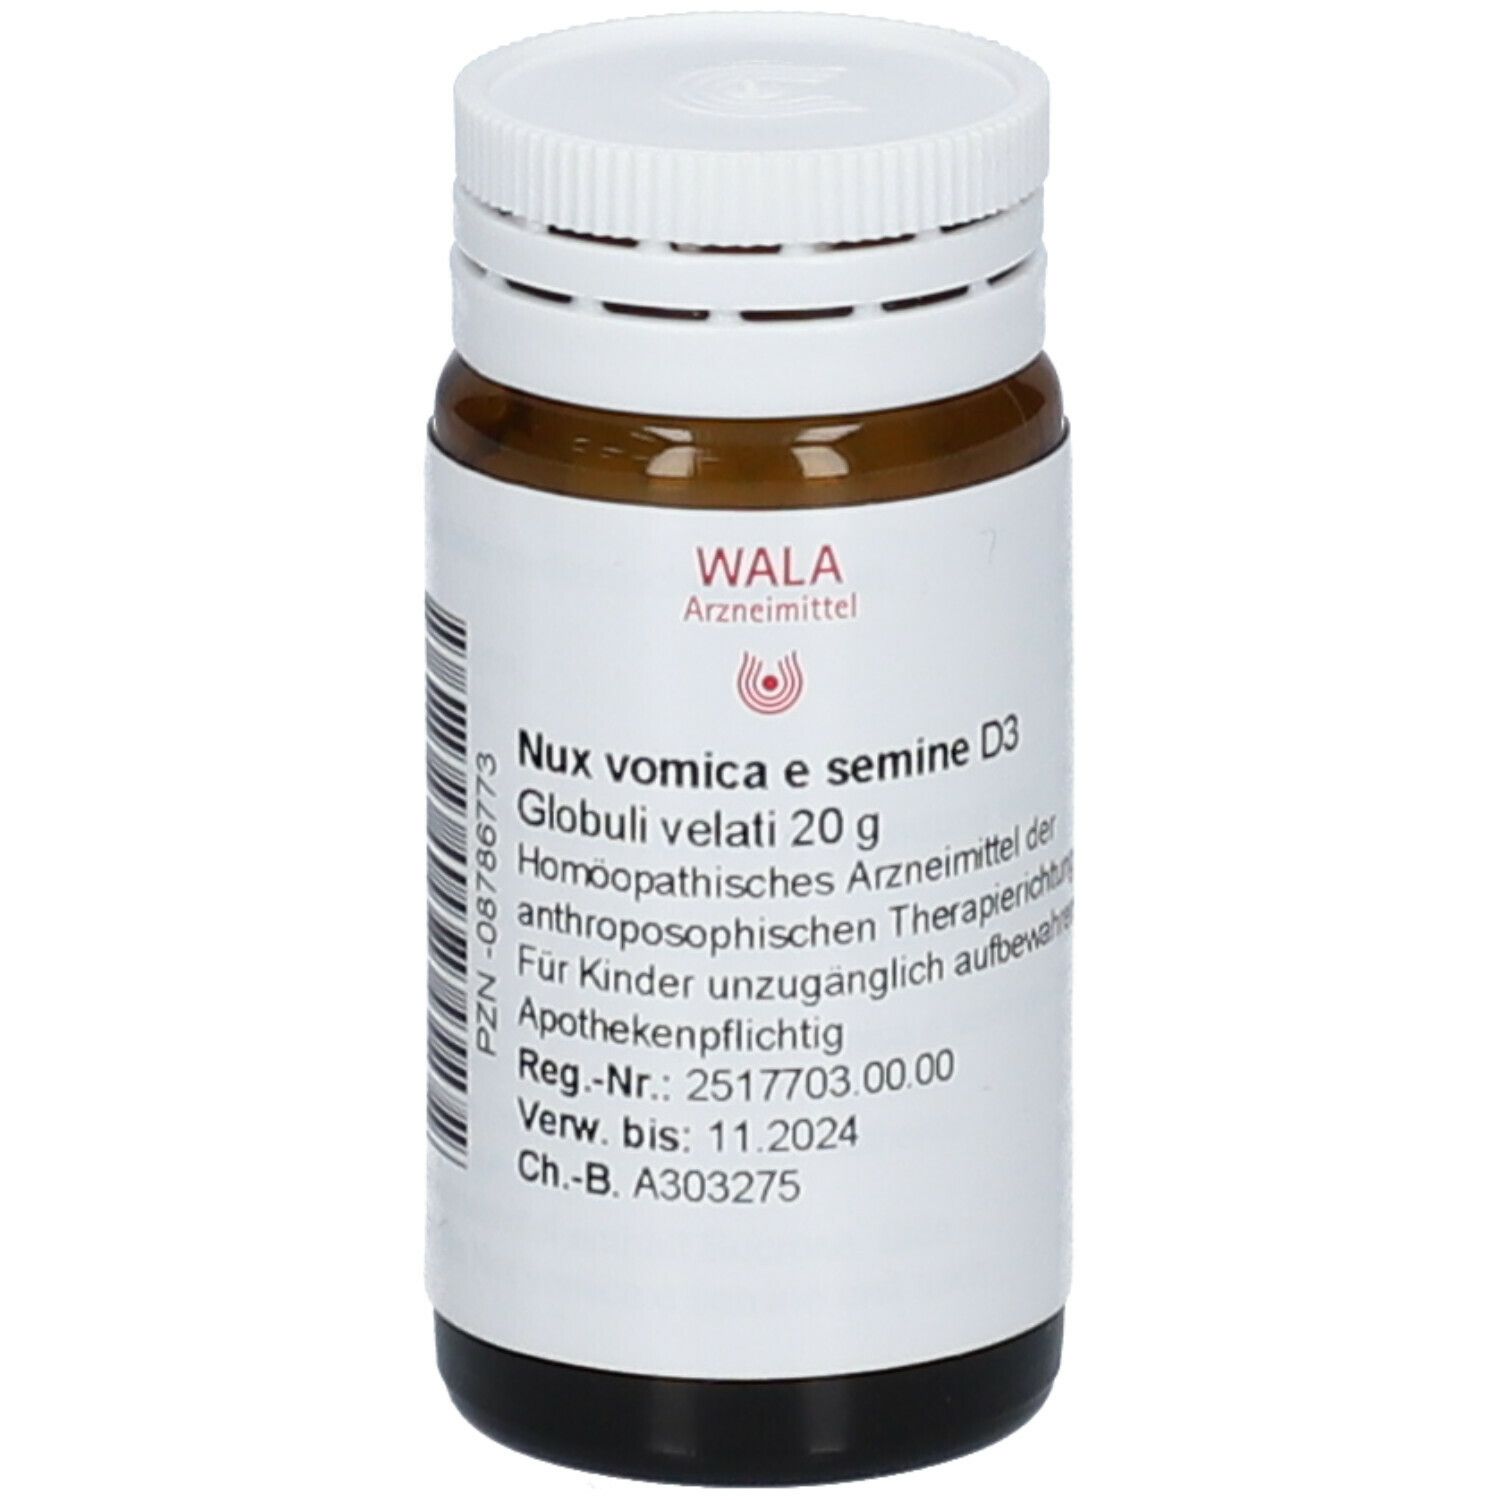 Wala® Nux vomica e semine D 3